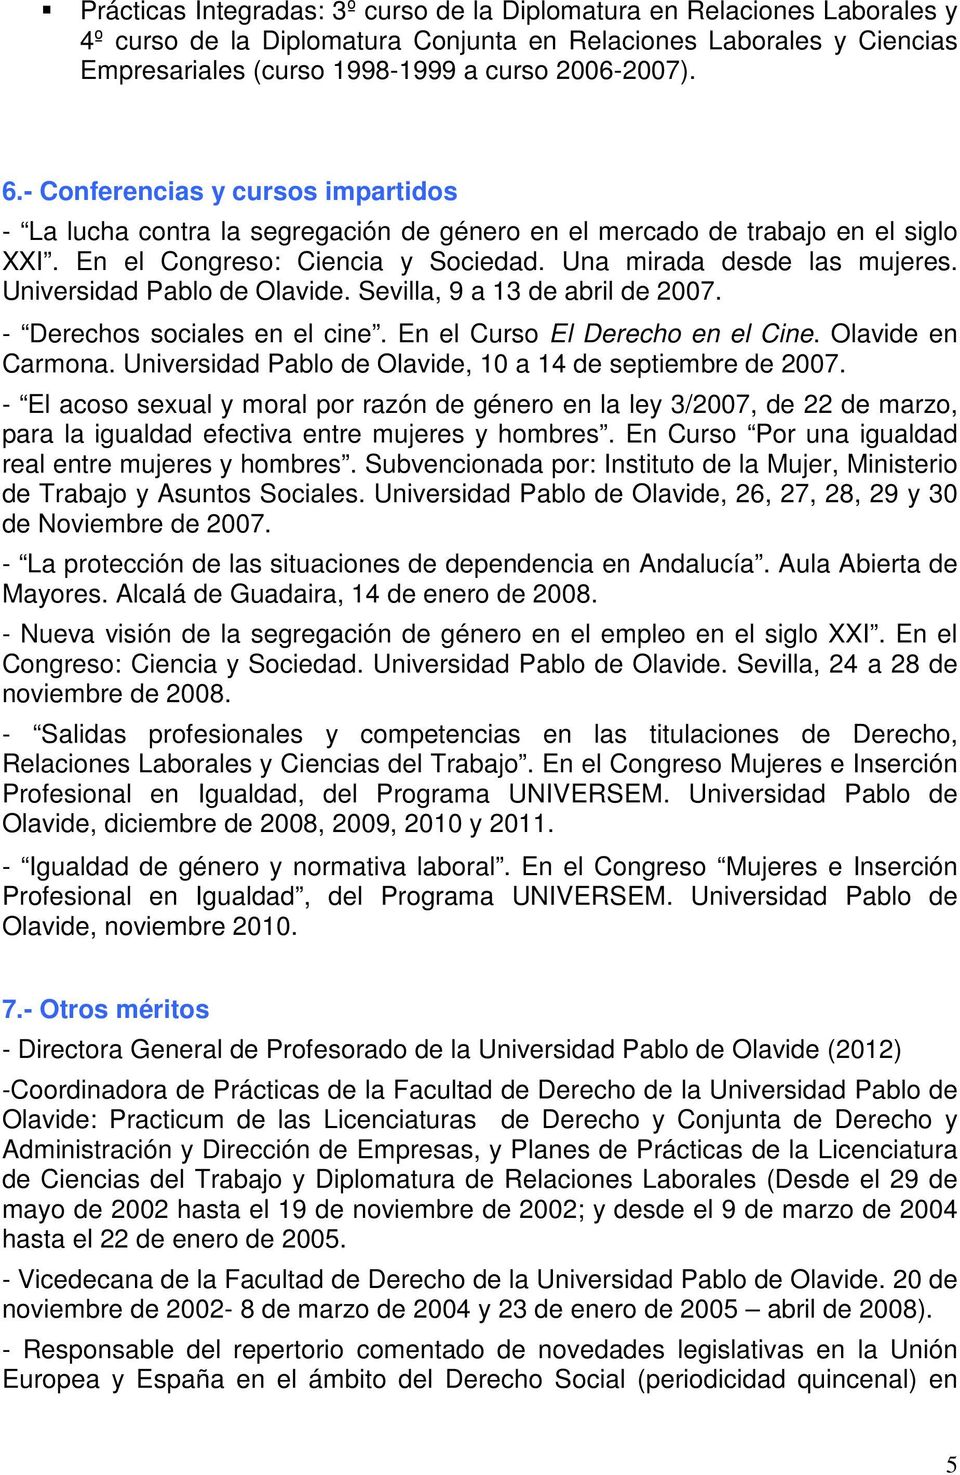 Universidad Pablo de Olavide. Sevilla, 9 a 13 de abril de 2007. - Derechos sociales en el cine. En el Curso El Derecho en el Cine. Olavide en Carmona.